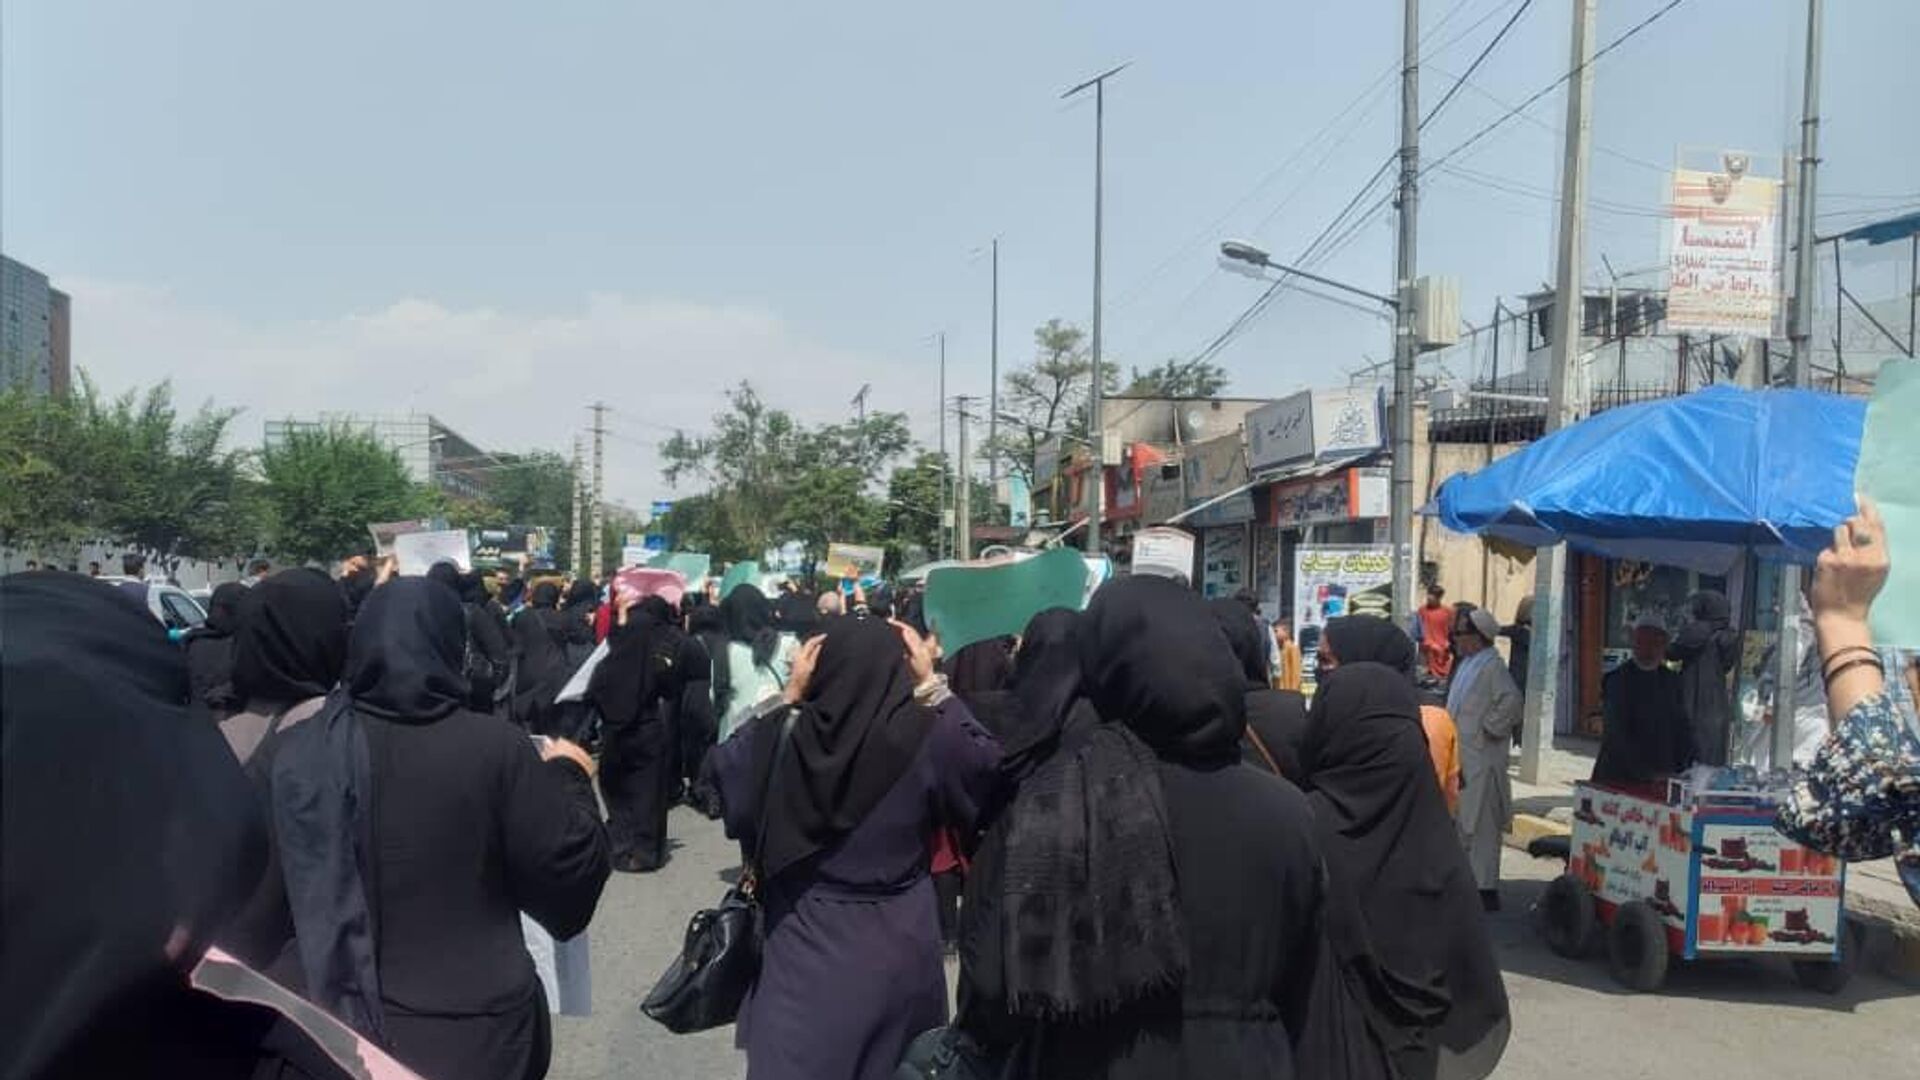   اعتراض زنان در کابل با گلوله طالبان پاسخ داده شد   - اسپوتنیک افغانستان  , 1920, 24.12.2022